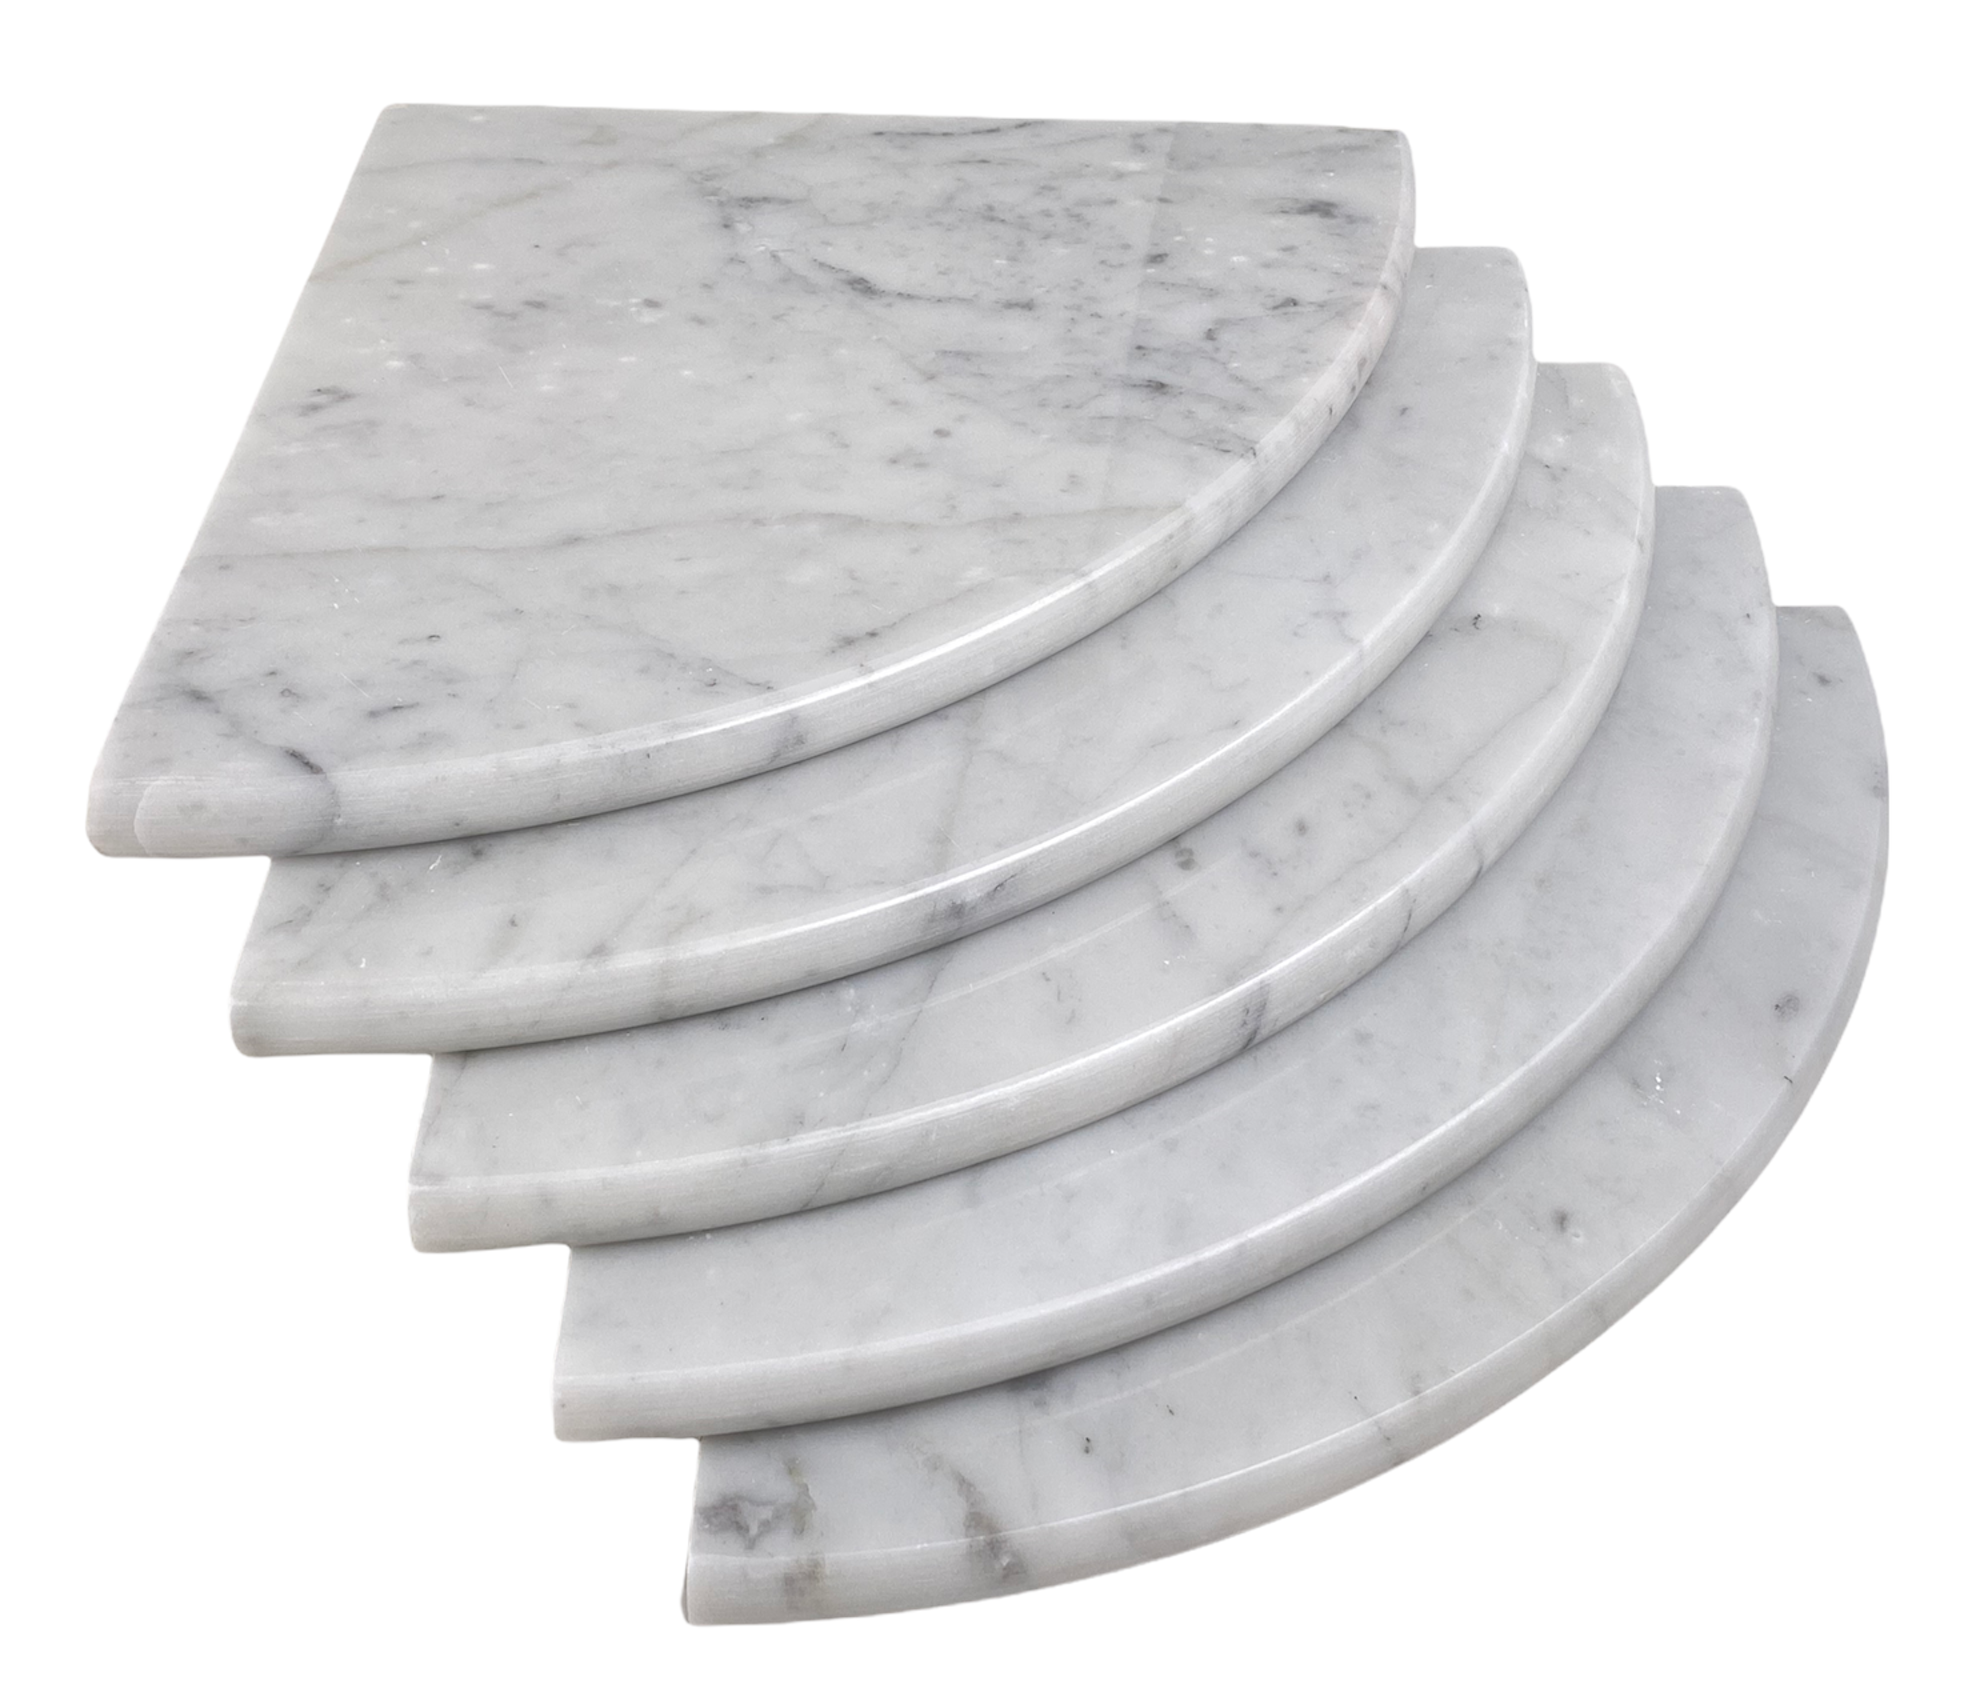 Tenedos Marble Corner Shower Shelf Stone White Bianco Carrara Stone Two Sides Polished 9" x 9" Rounded Front